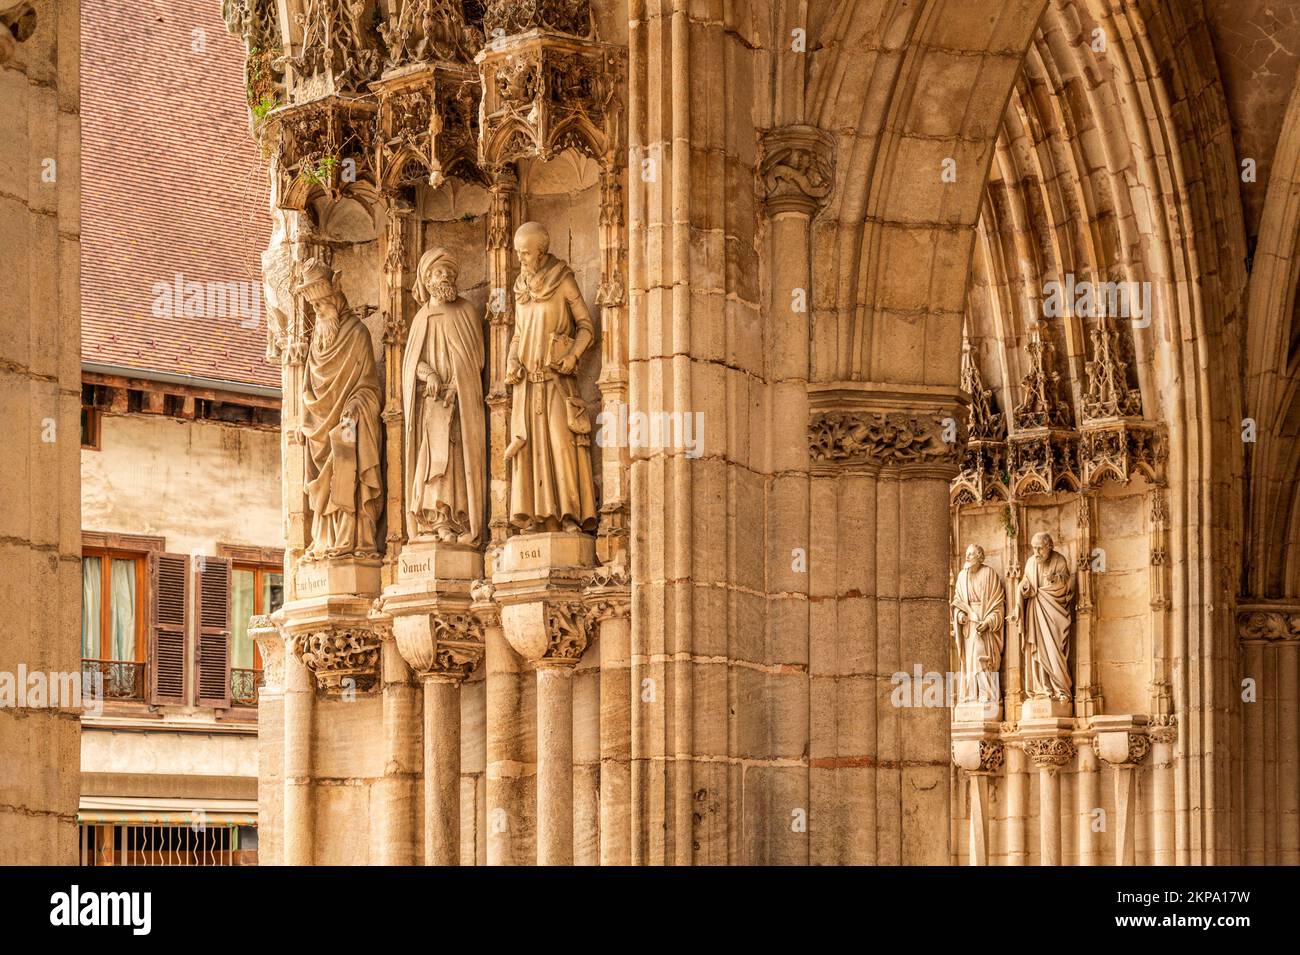 Les sculptures en pierre de la cathédrale d'Auxonne, France Banque D'Images